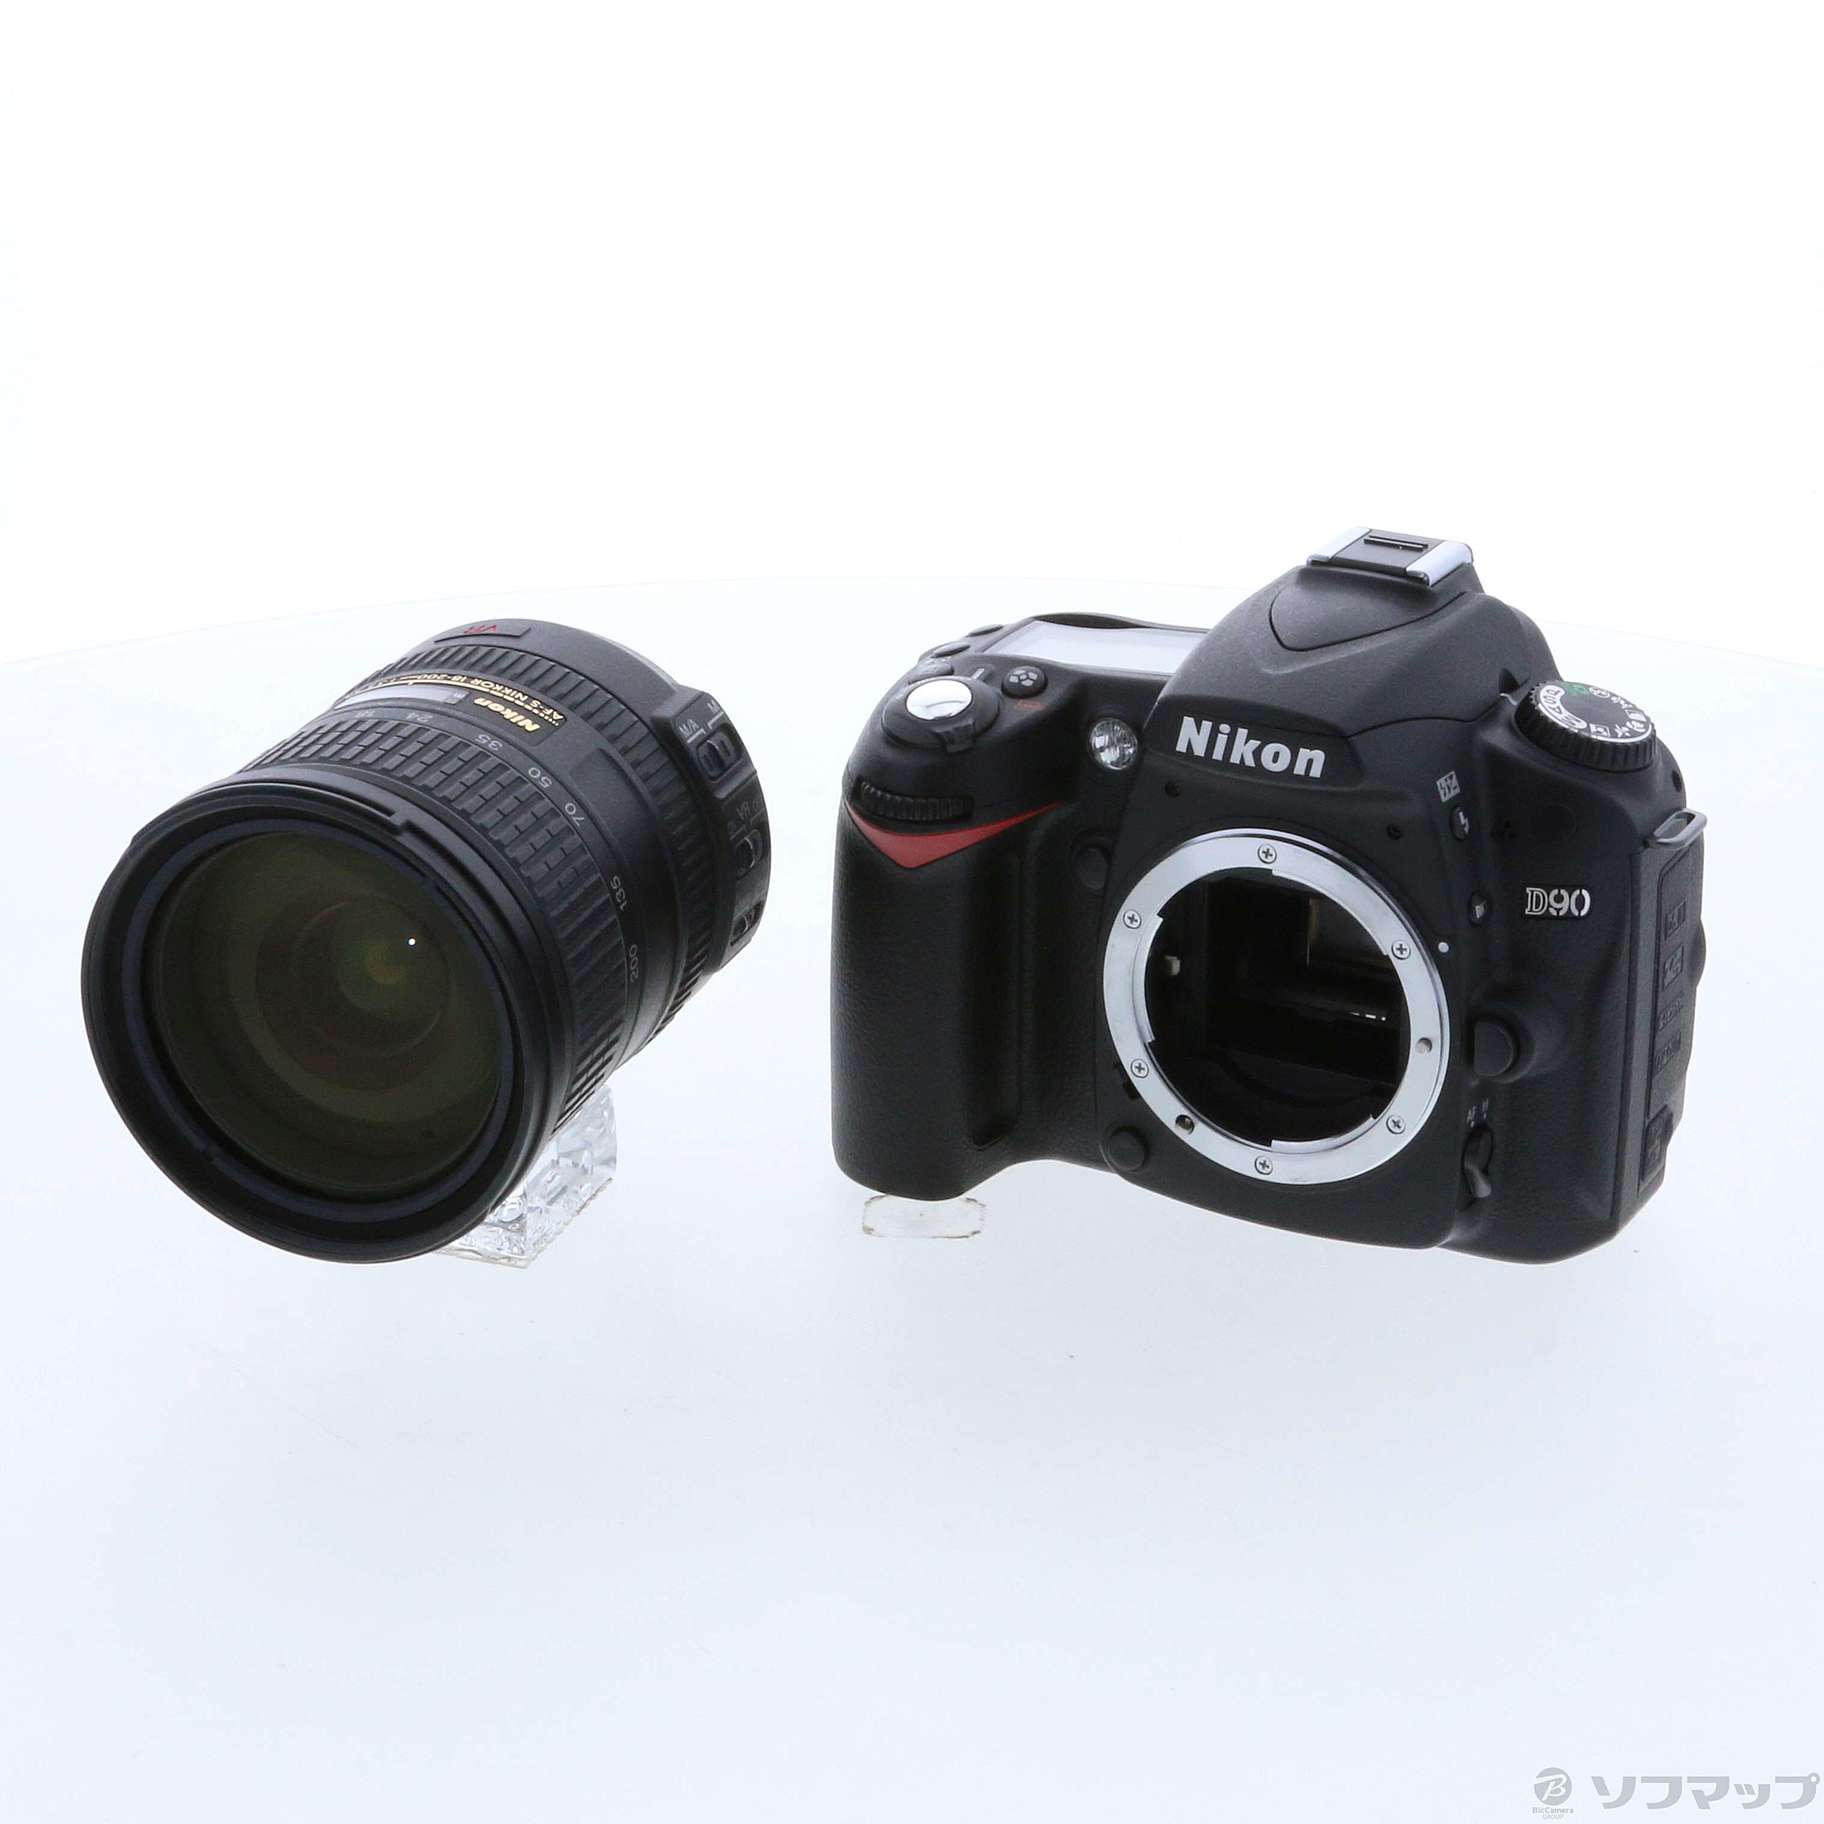 Nikon D90 AF-S DX VR18-200Gレンズキット